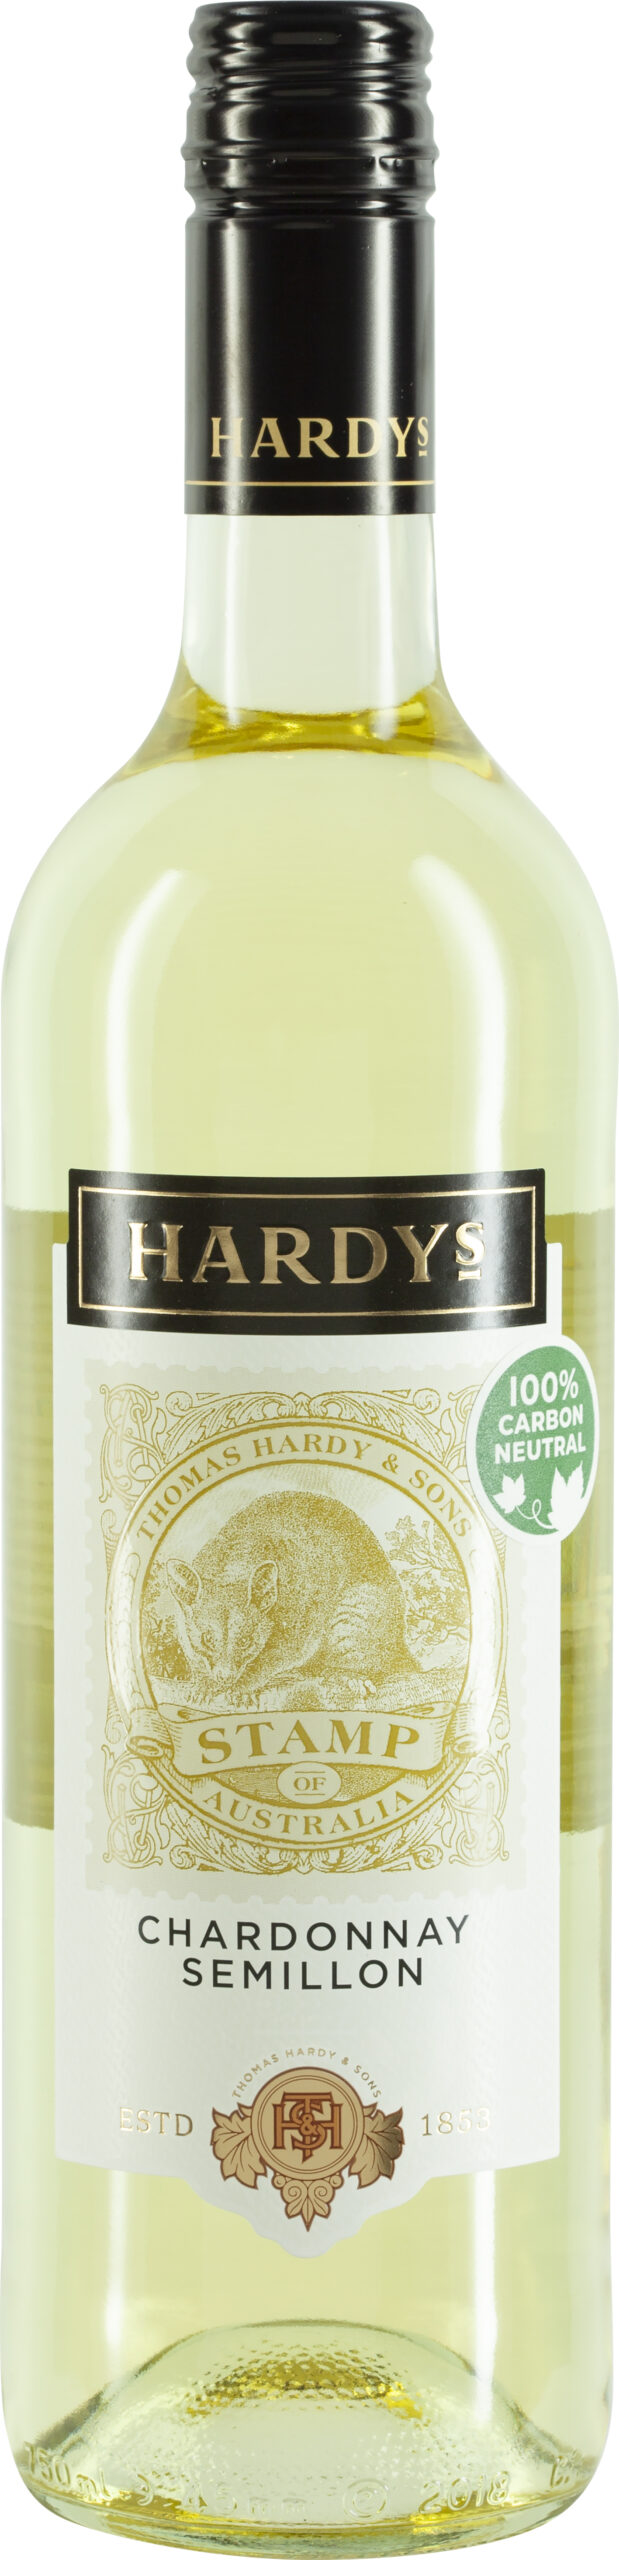 Hardys Stamp, Chardonnay Semillon South - Australia Schenk East Weine